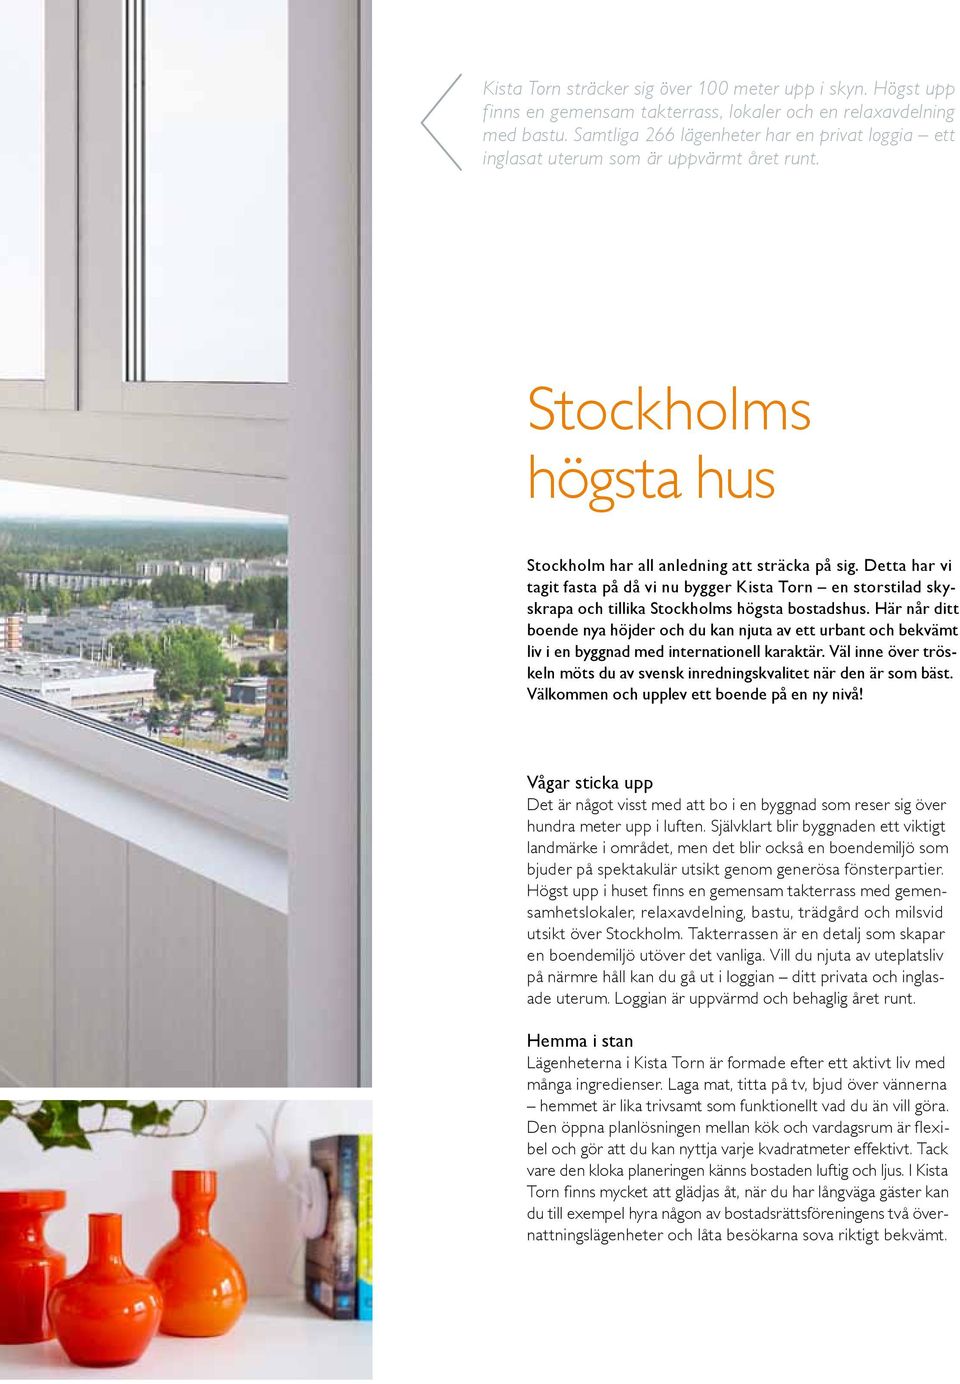 Detta har vi tagit fasta på då vi nu bygger Kista Torn en storstilad skyskrapa och tillika Stockholms högsta bostadshus.